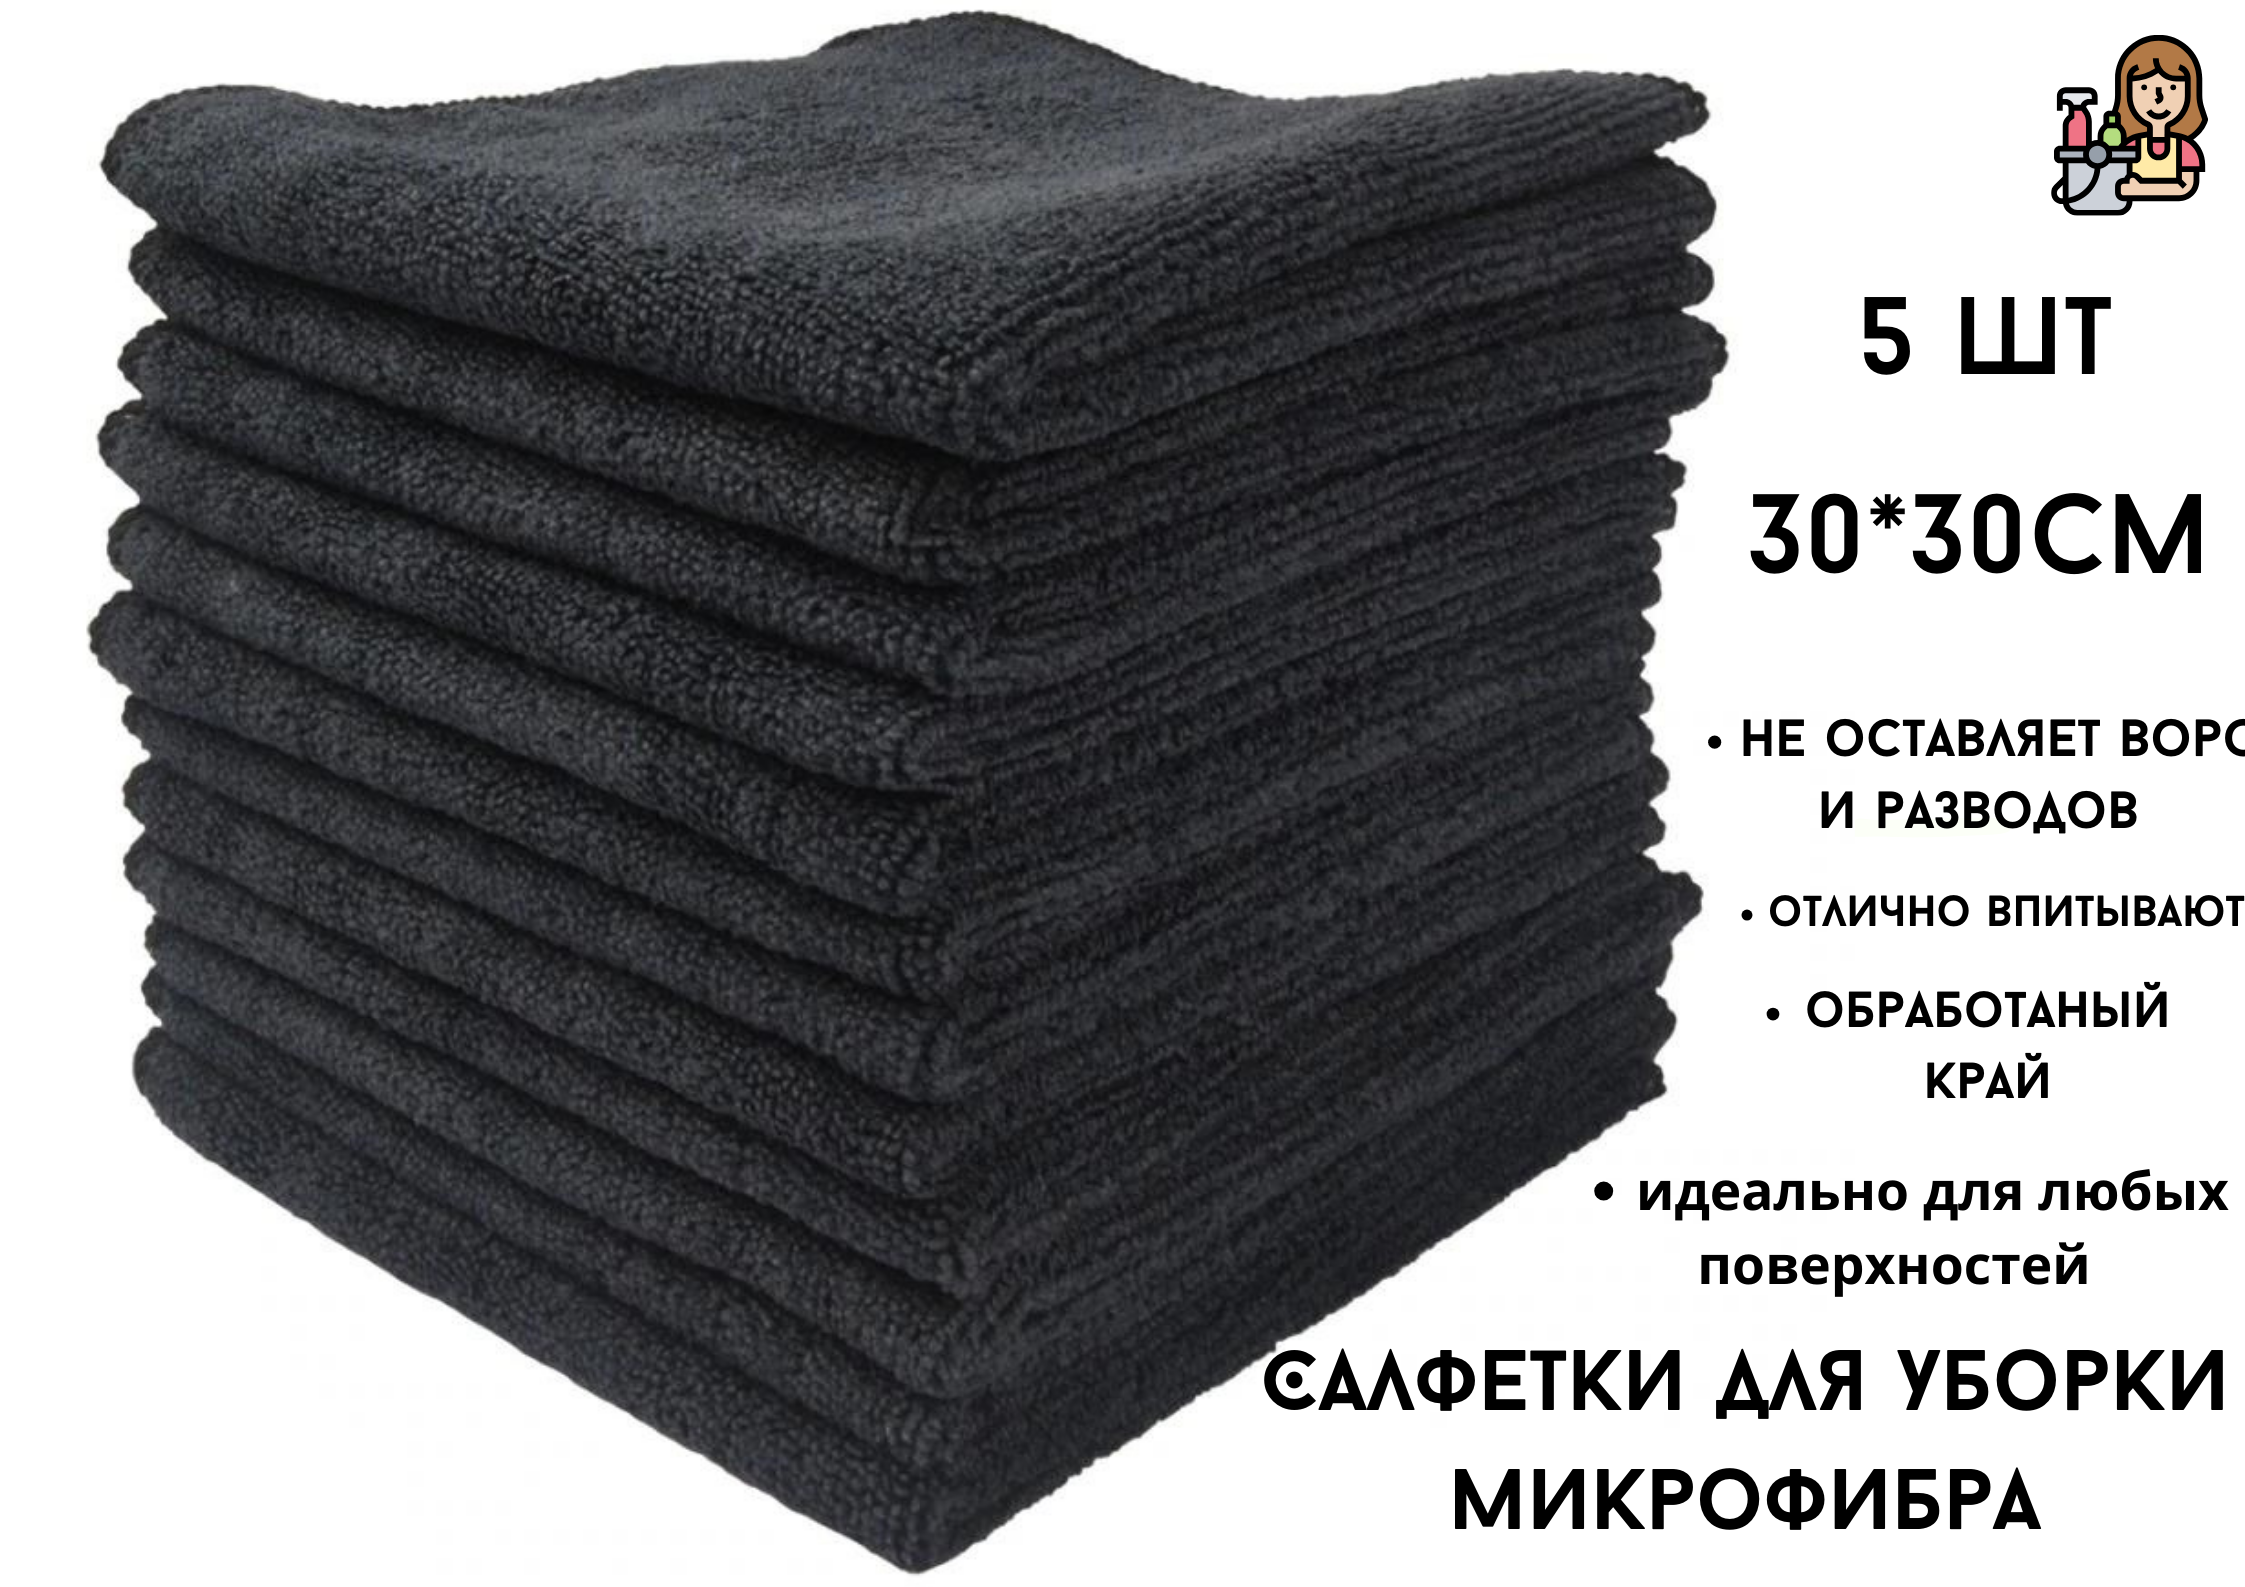 Салфетки для уборки БытСервис микрофибра черный 30 х 30 см, 5 шт